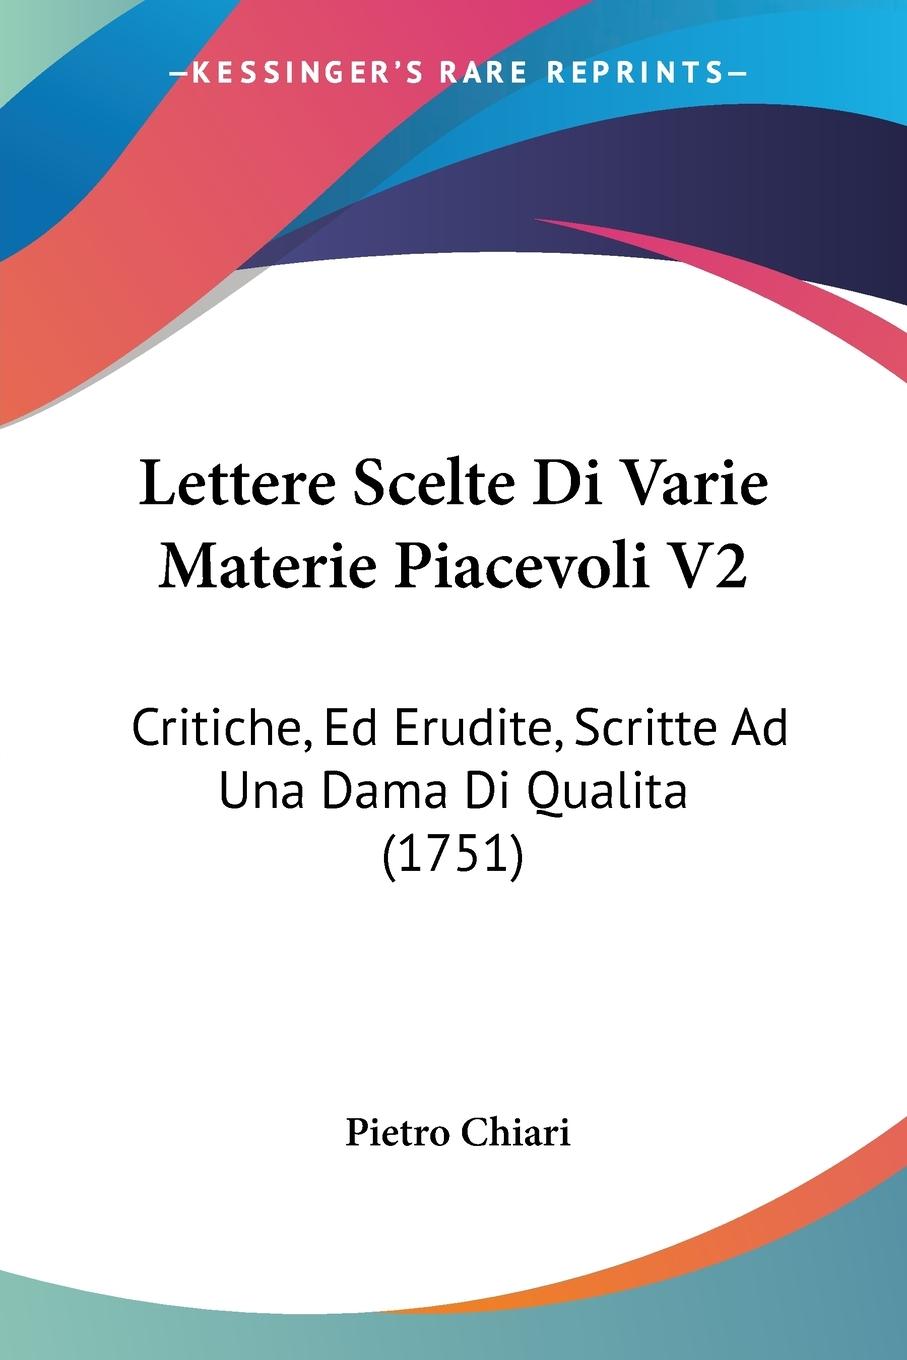 Lettere Scelte Di Varie Materie Piacevoli V2 - Chiari, Pietro